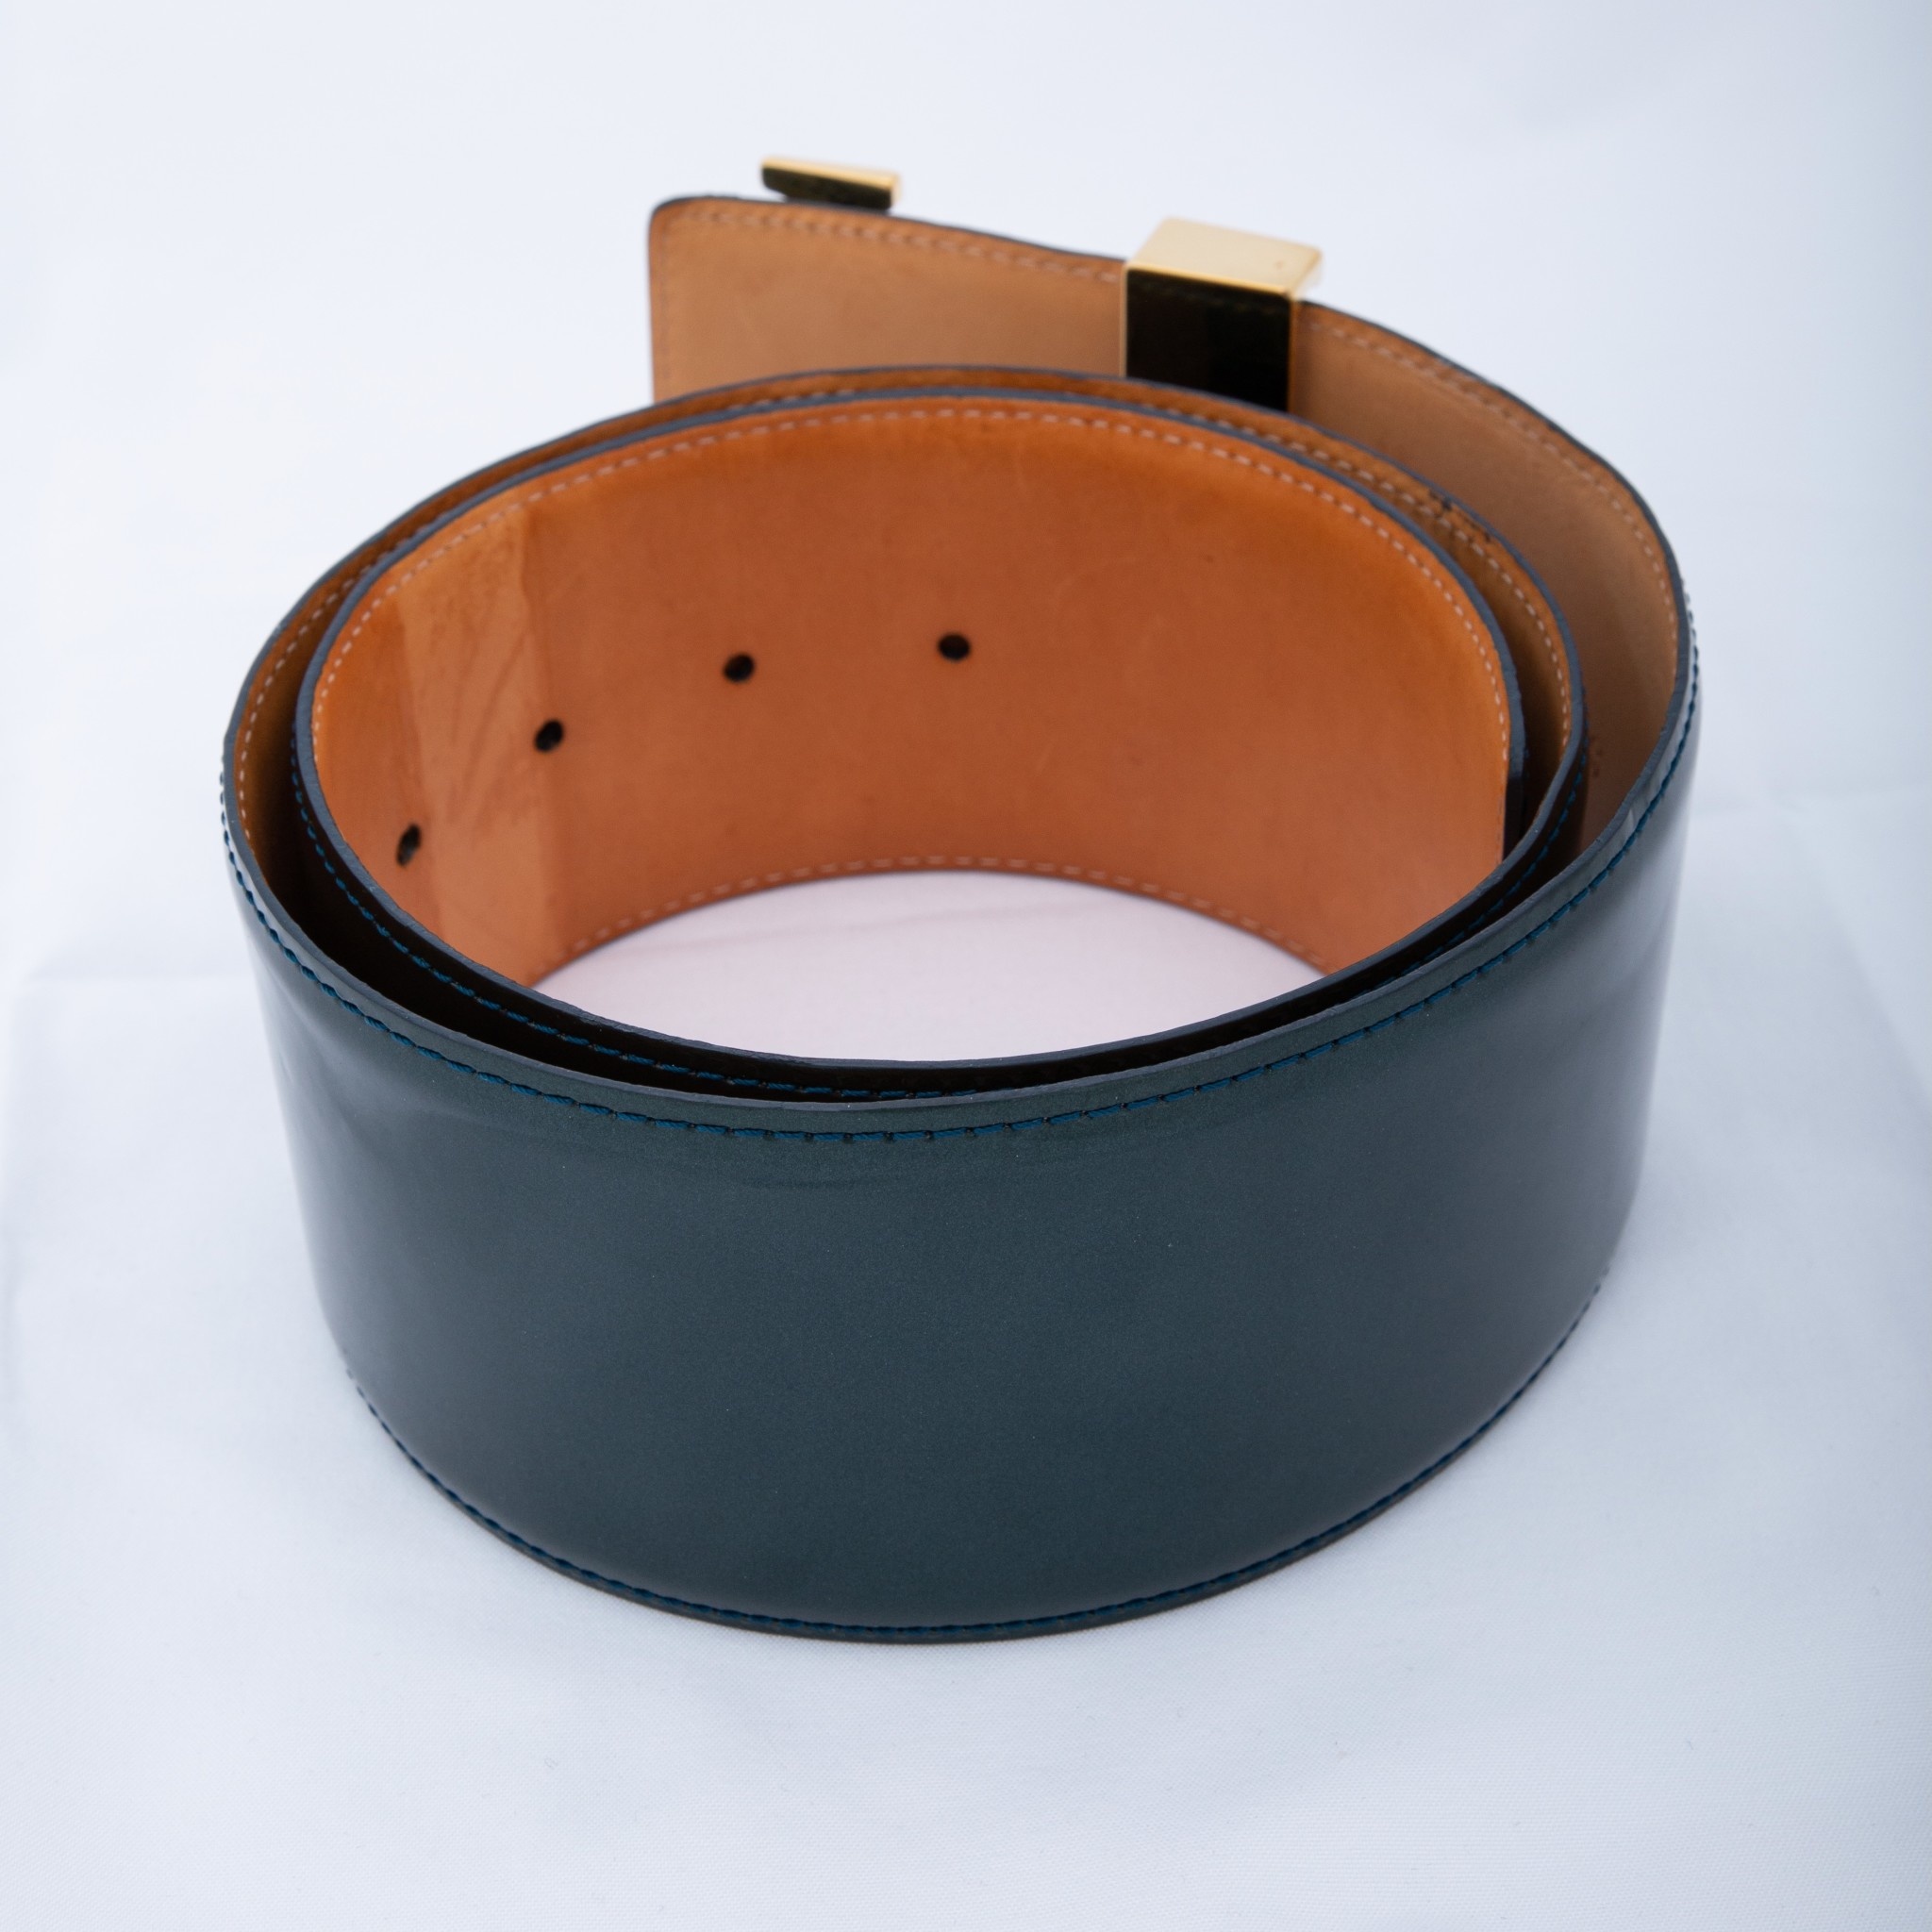 vernis leather belt